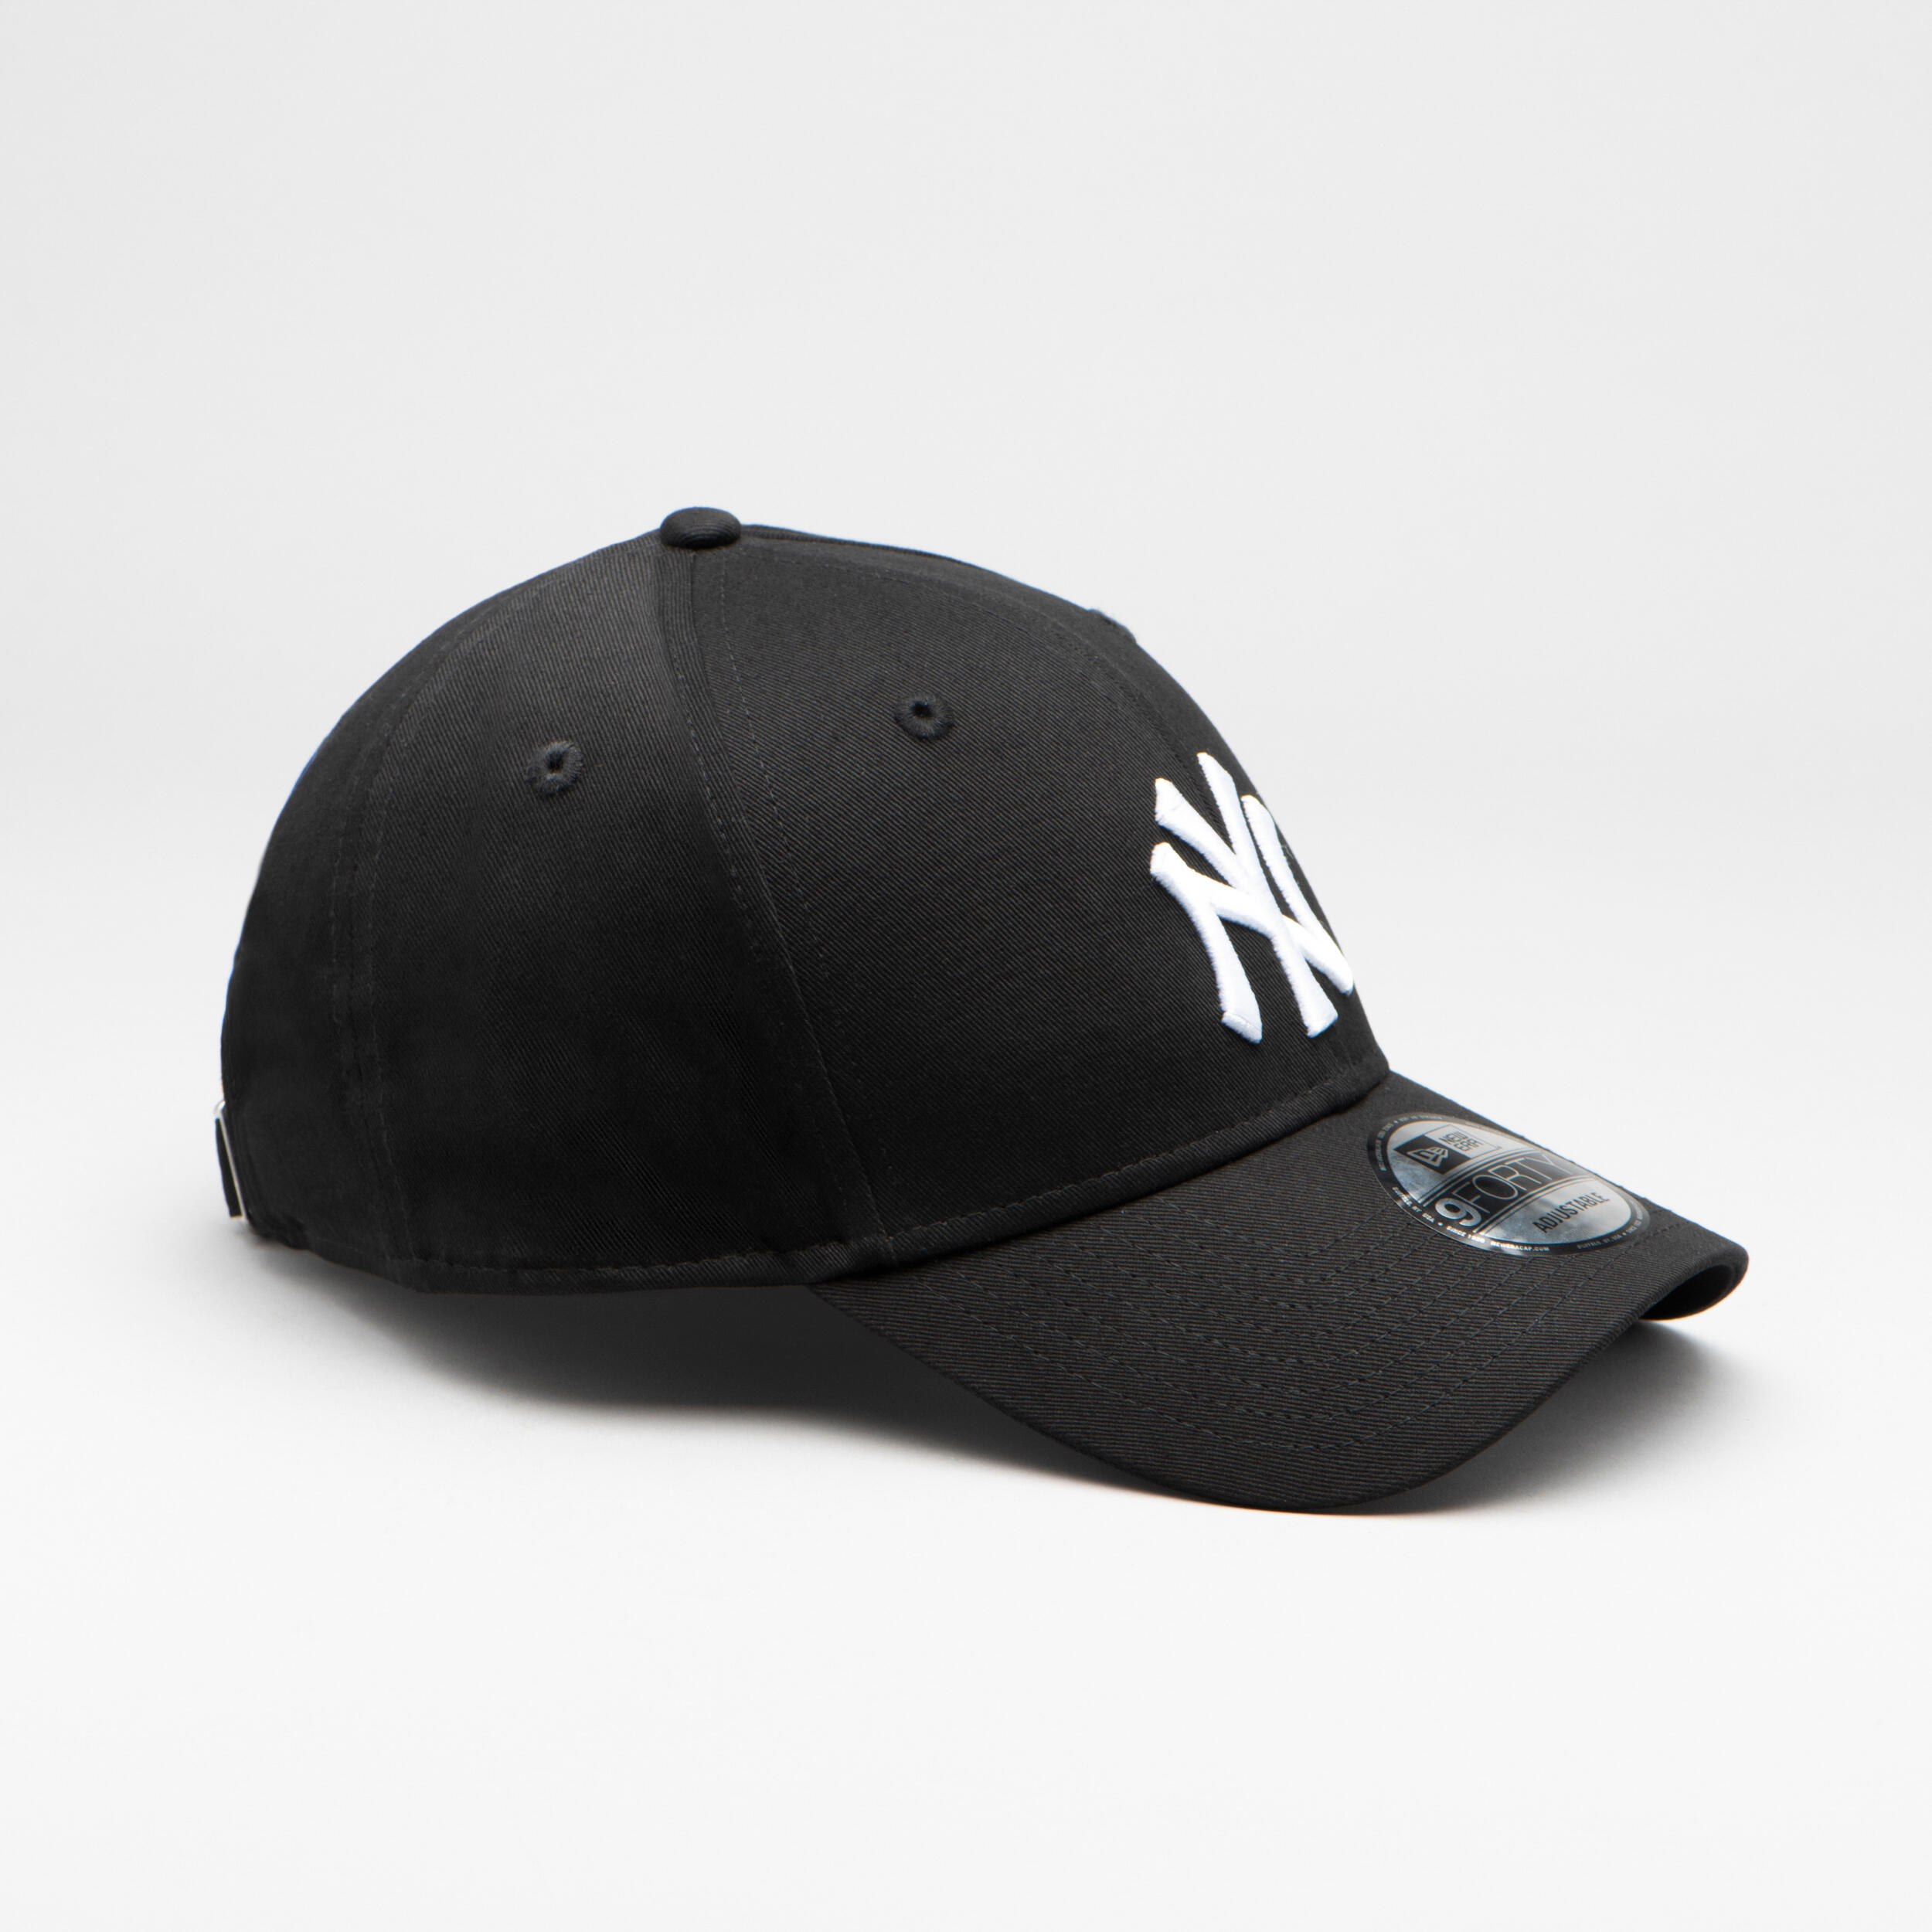 Men's/Women's Baseball Cap MLB - New York Yankees/White 4/7